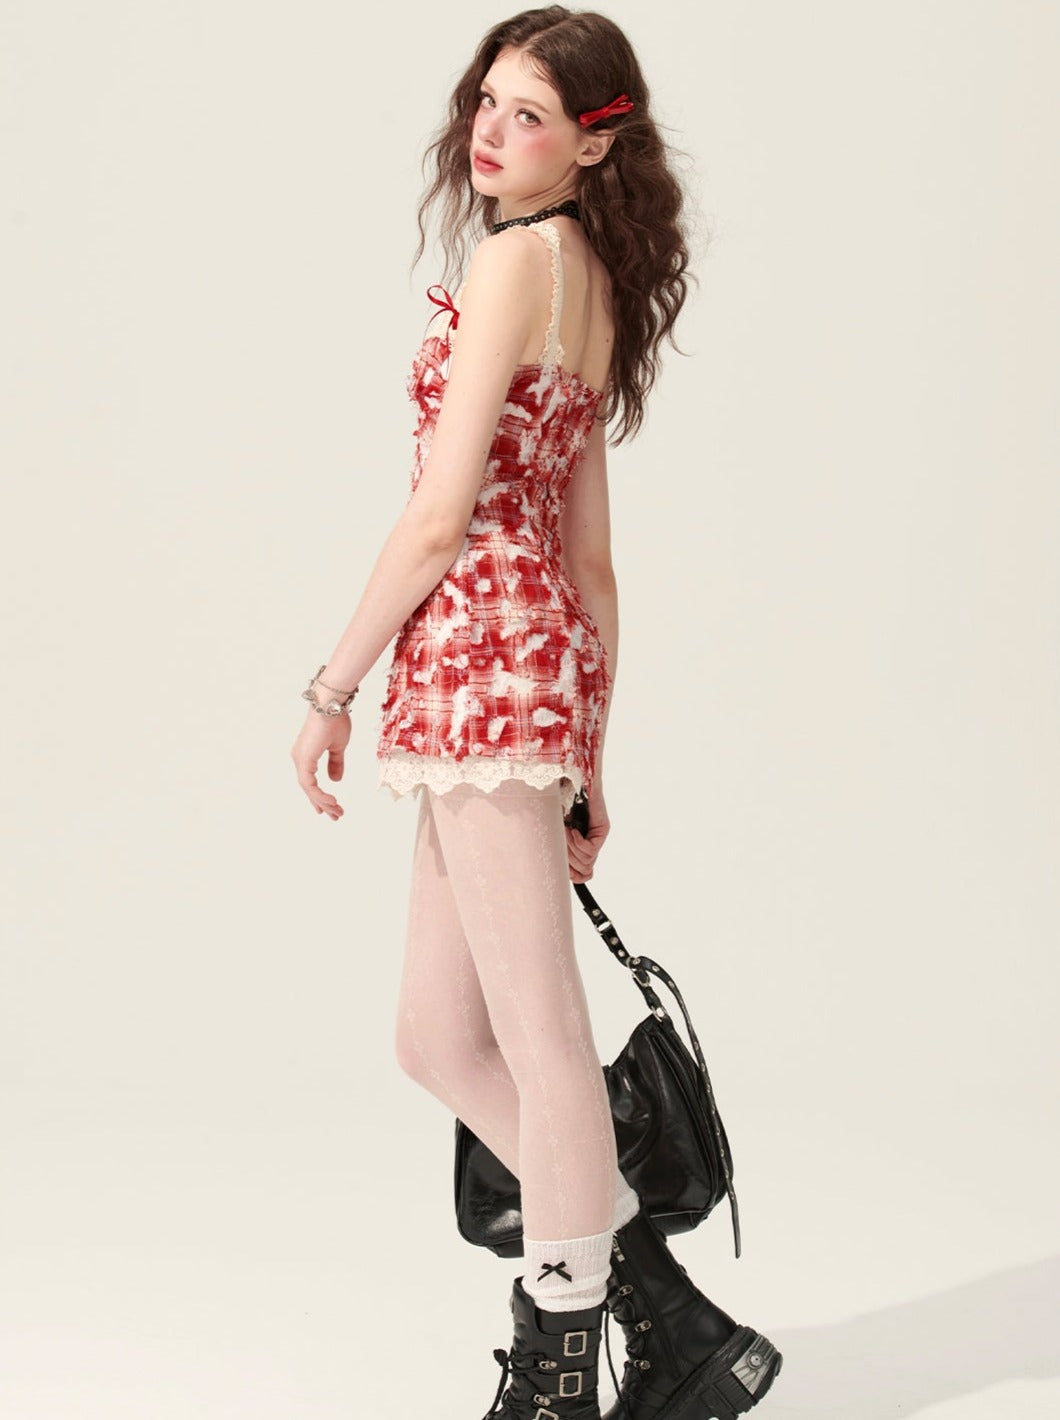 5월 31일 20시 판매】레스 아이 와일드 파이어 레드 허리 슬립 드레스 여성 여름 스커트